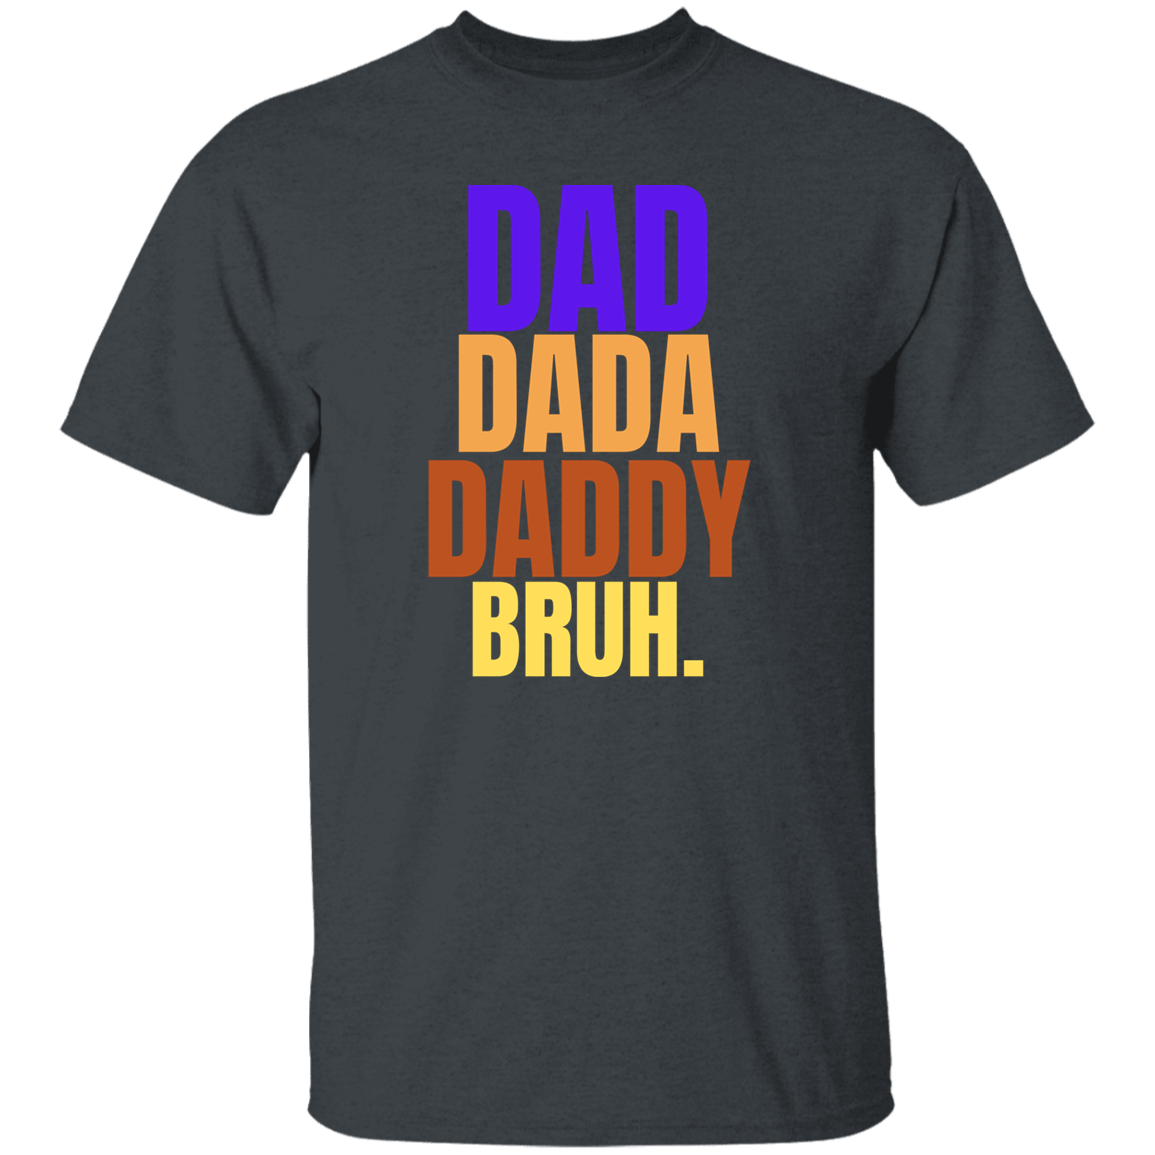 Dad, bruh T-Shirt